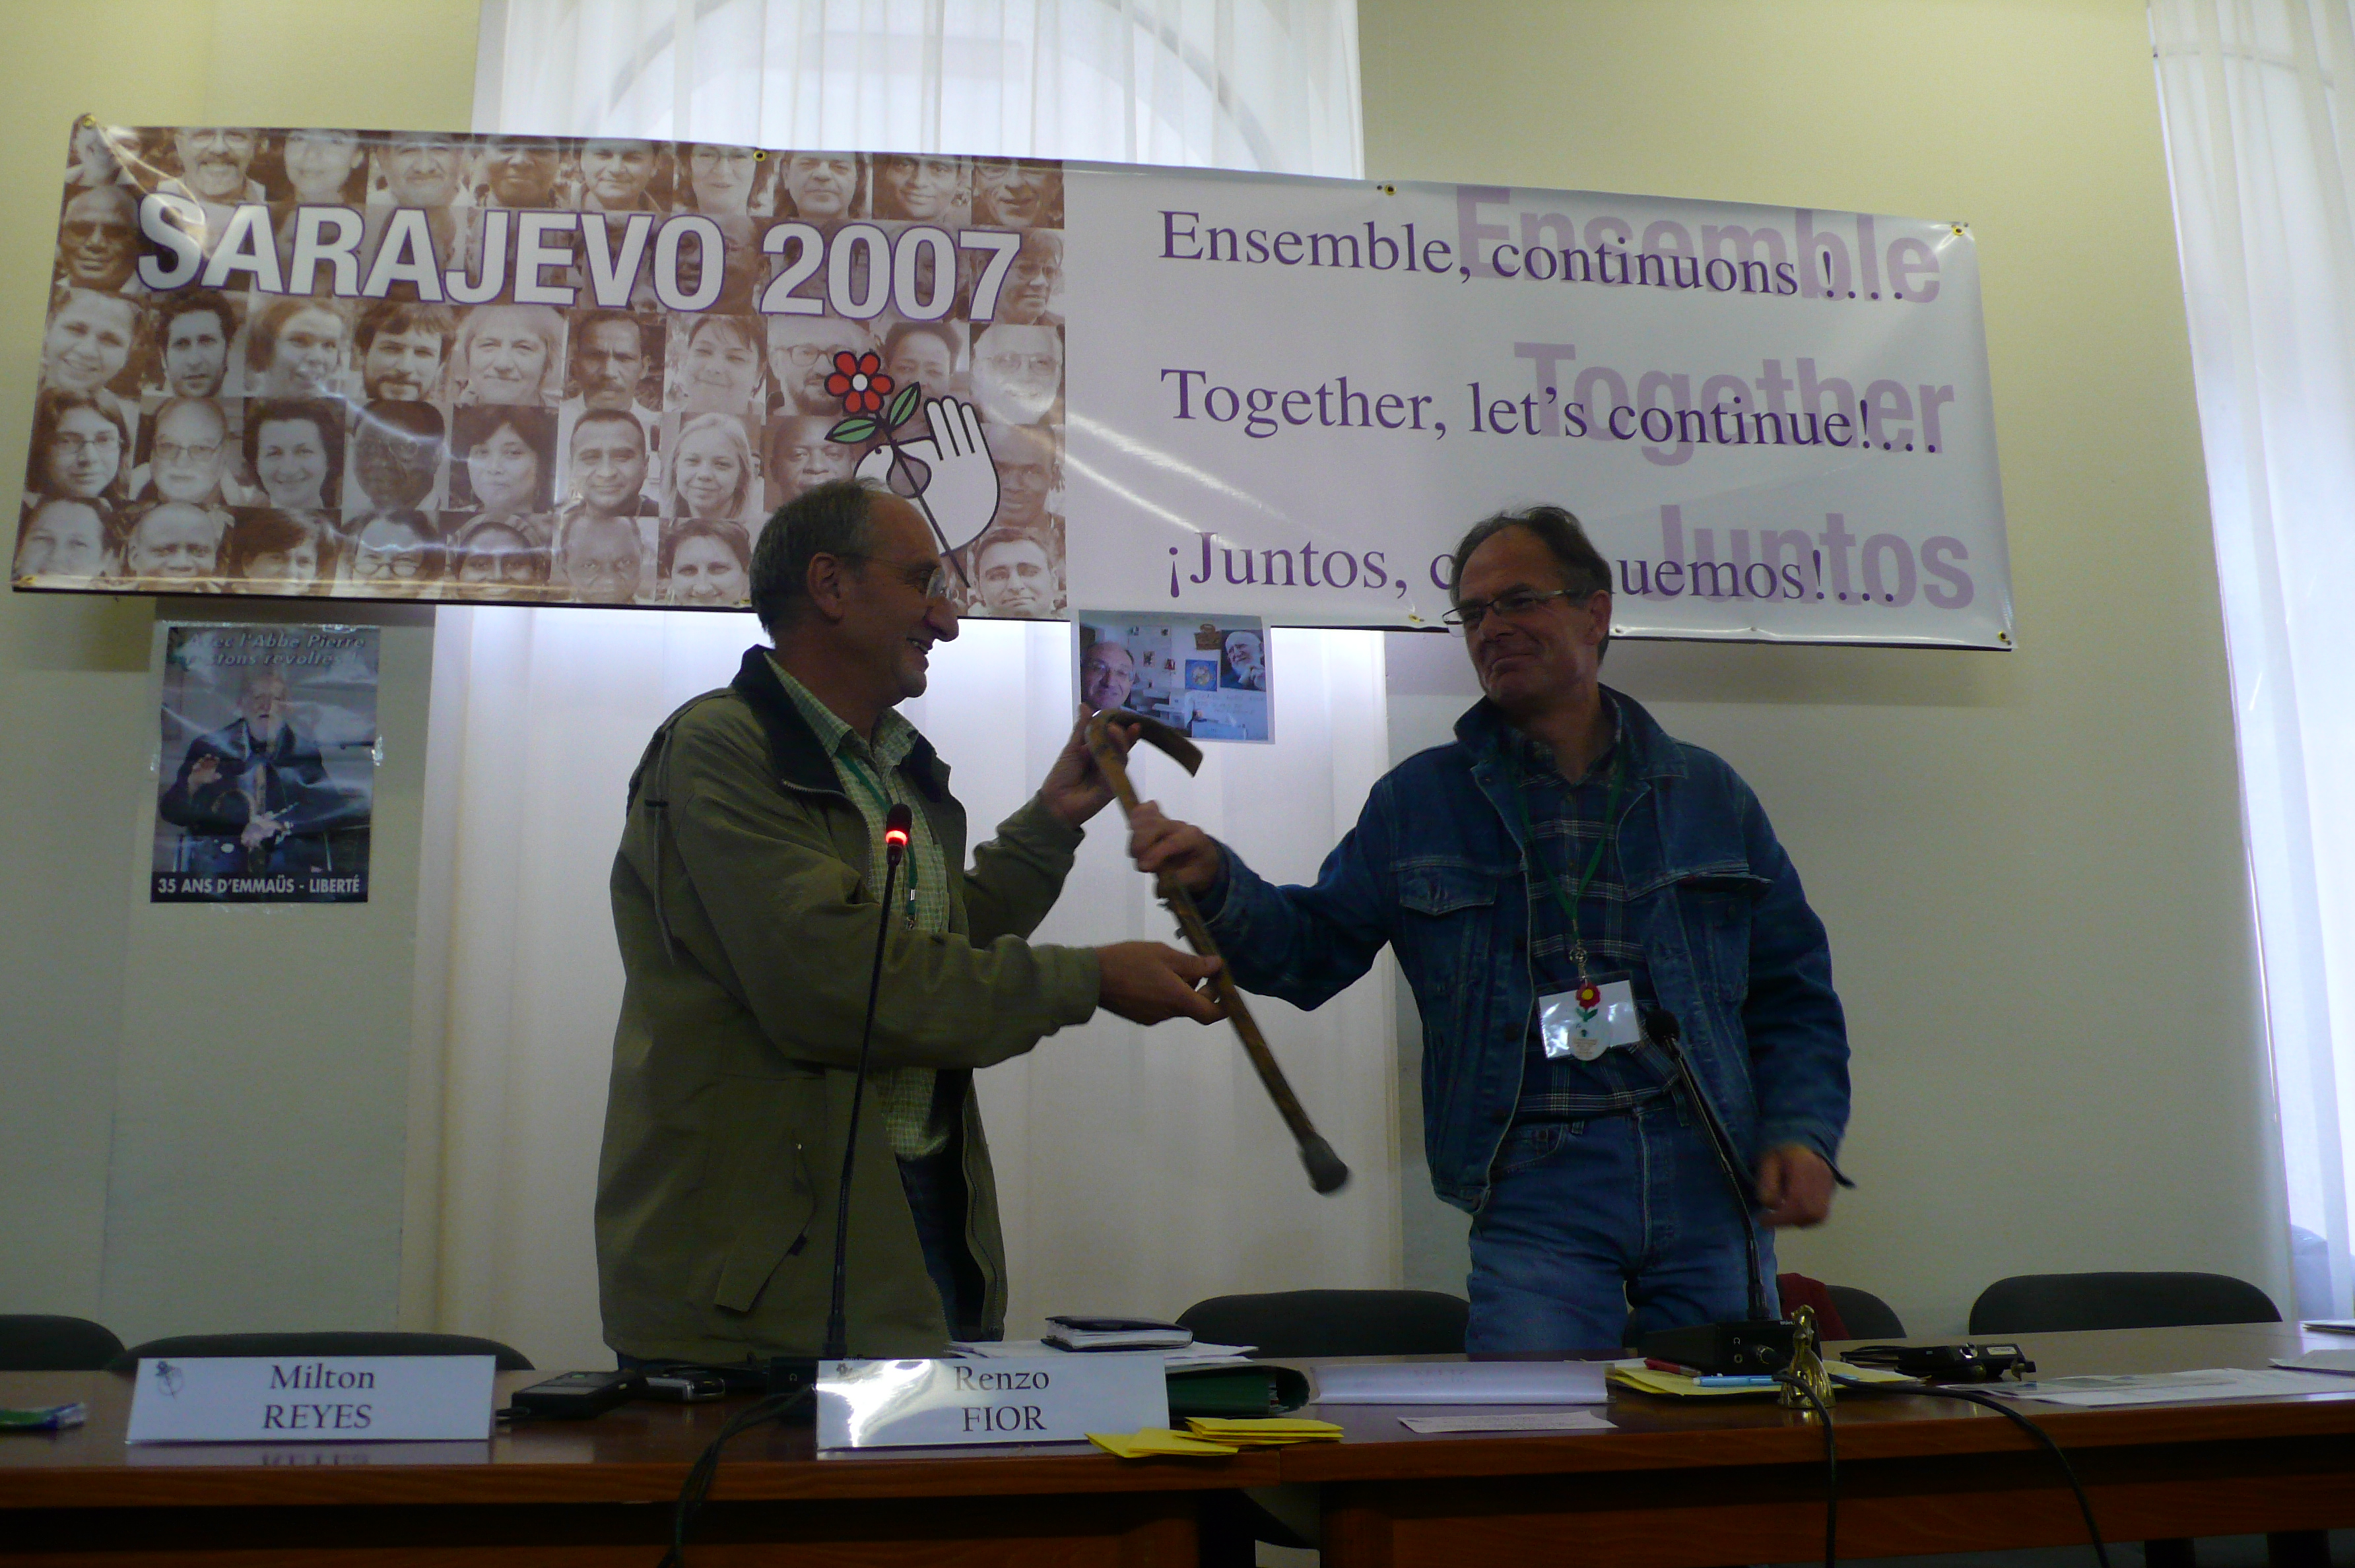 Photographie de Jean Rousseau recevant symboliquement la canne de l'abbé Pierre par Renzo Fior pour sa prise de fonction en tant que nouveau président de l'association, 2007.